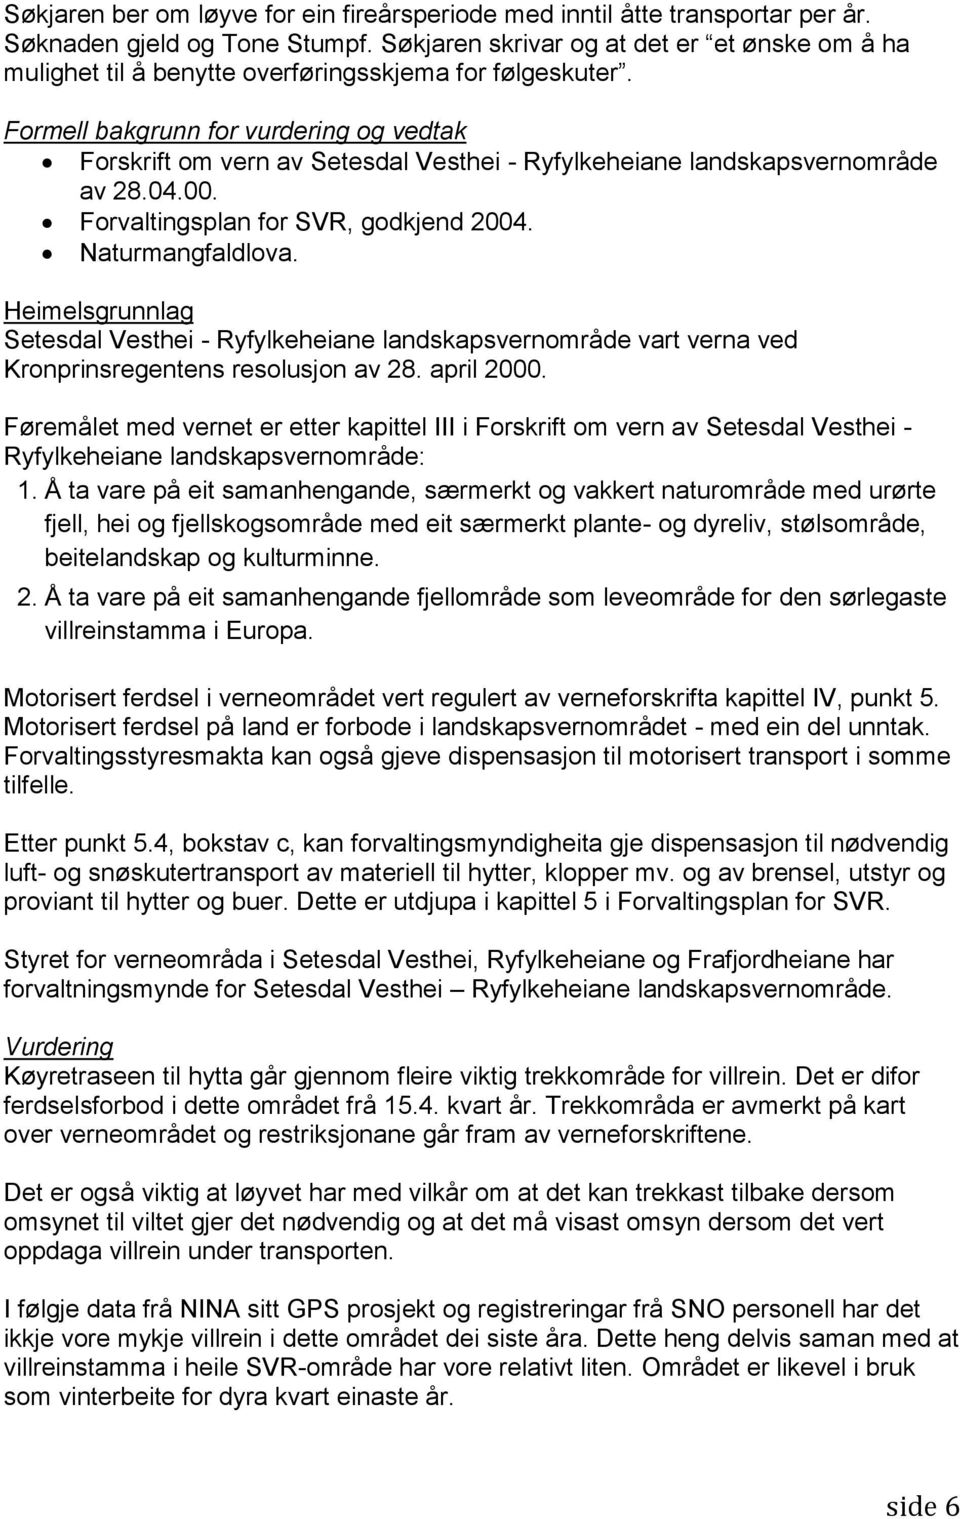 Formell bakgrunn for vurdering og vedtak Forskrift om vern av Setesdal Vesthei - Ryfylkeheiane landskapsvernområde av 28.04.00. Forvaltingsplan for SVR, godkjend 2004. Naturmangfaldlova.